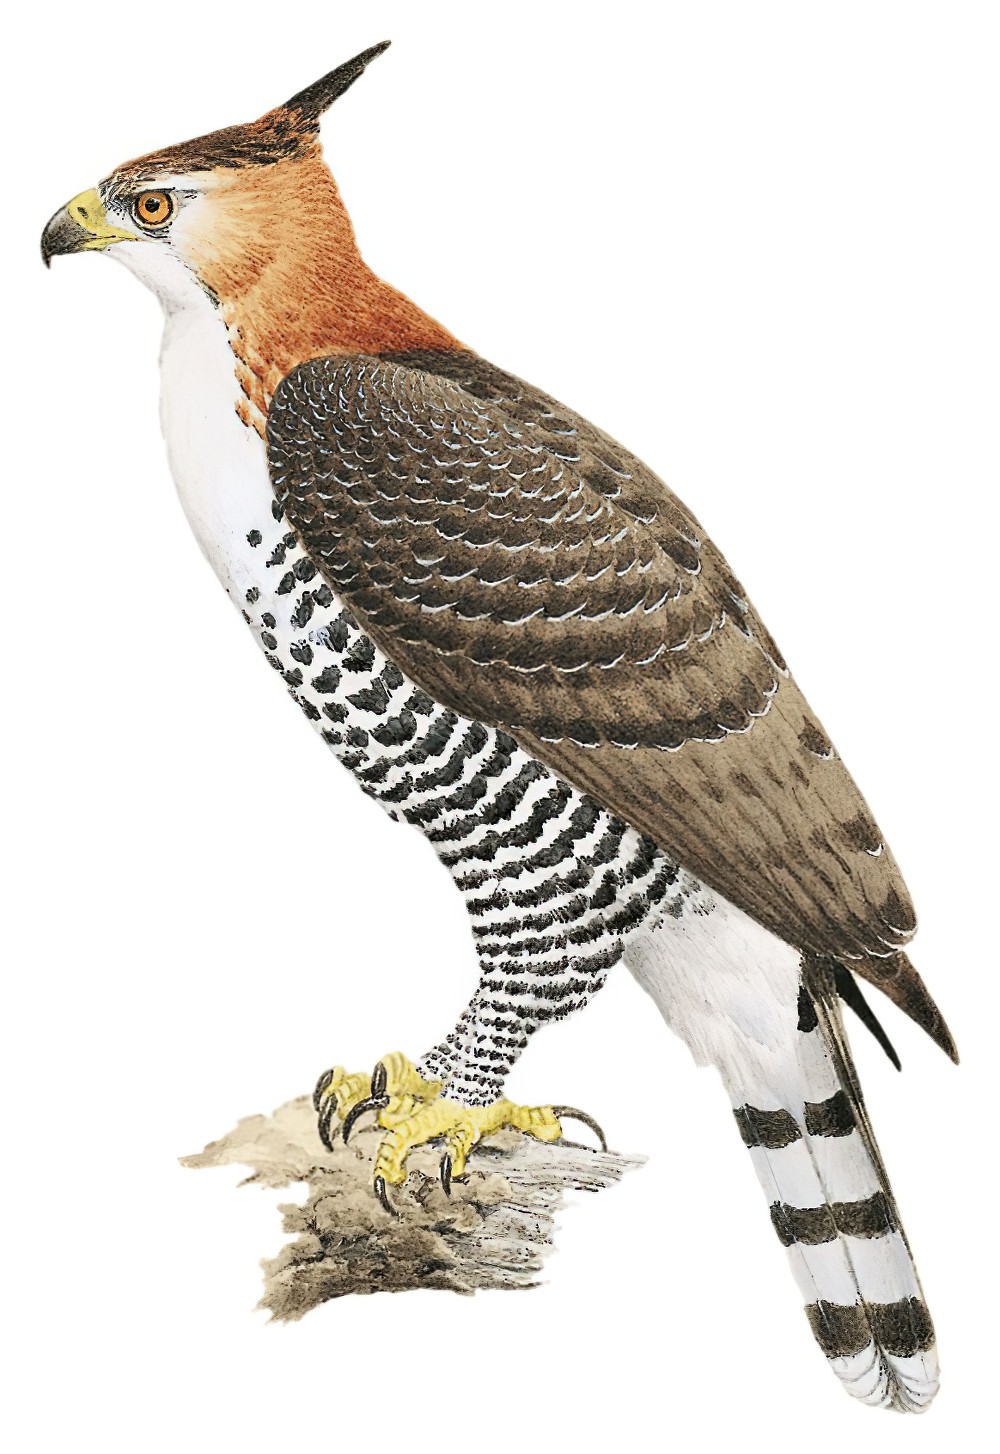 丽鹰雕 / Ornate Hawk-Eagle / Spizaetus ornatus